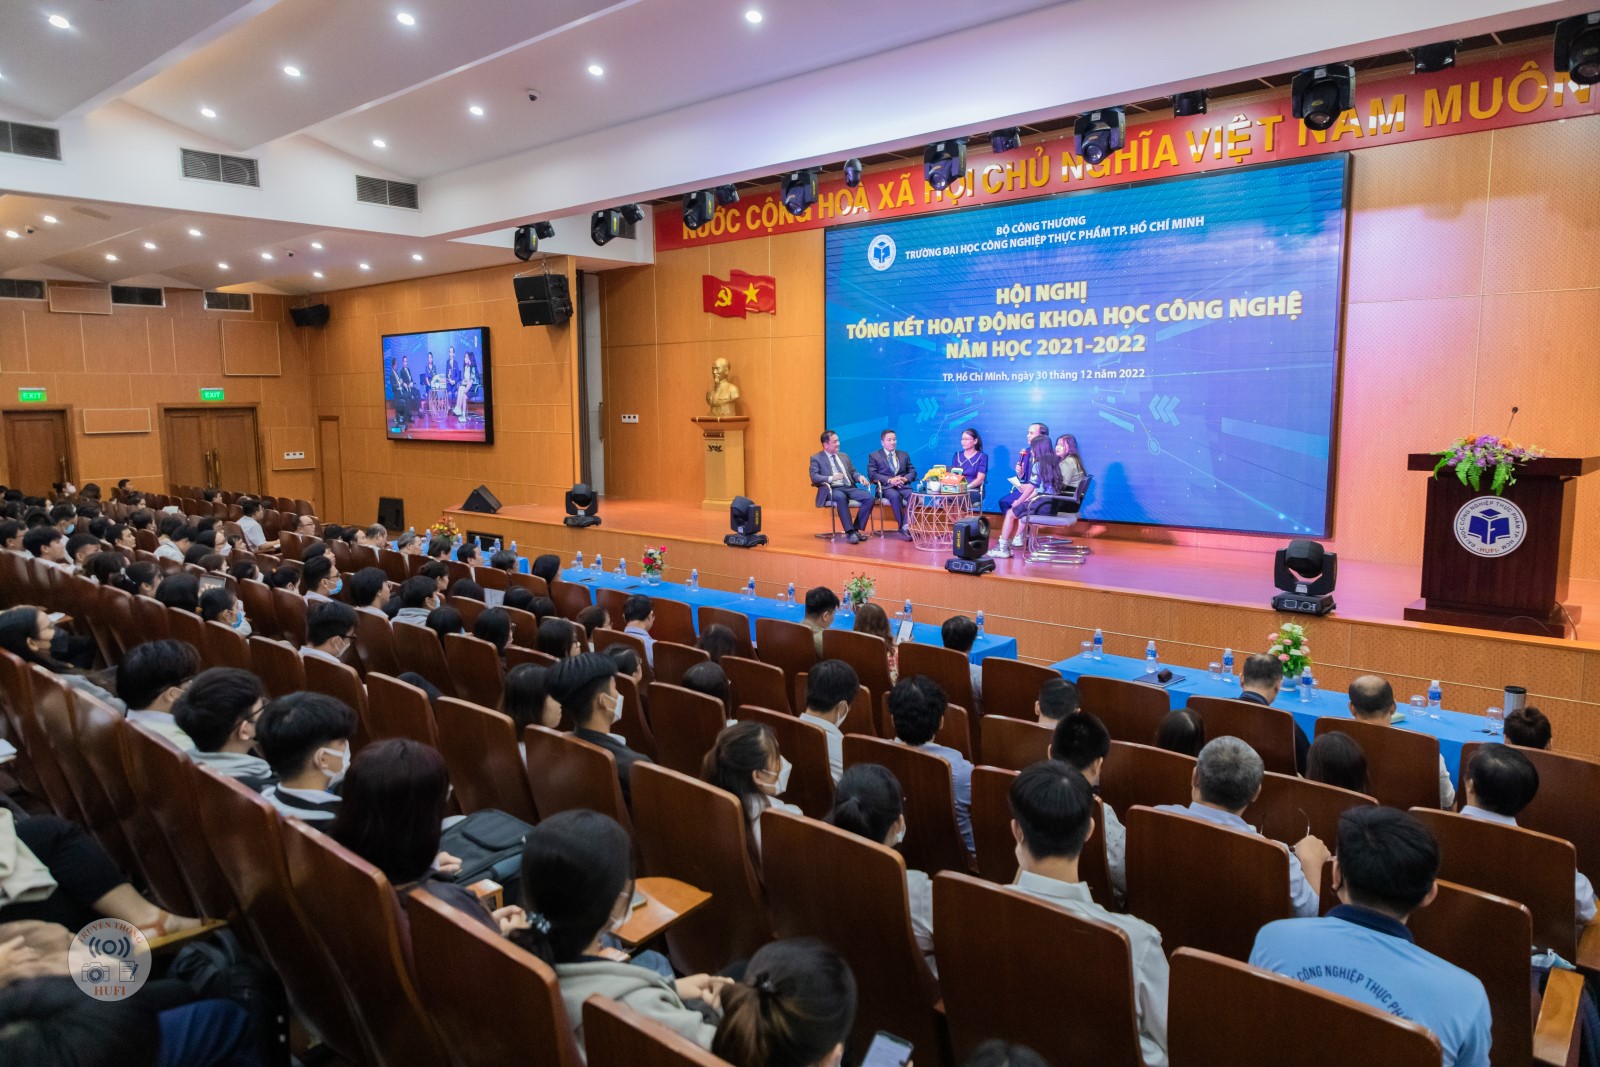 Hội nghị tổng kết hoạt động khoa học công nghệ năm học 2021-2022